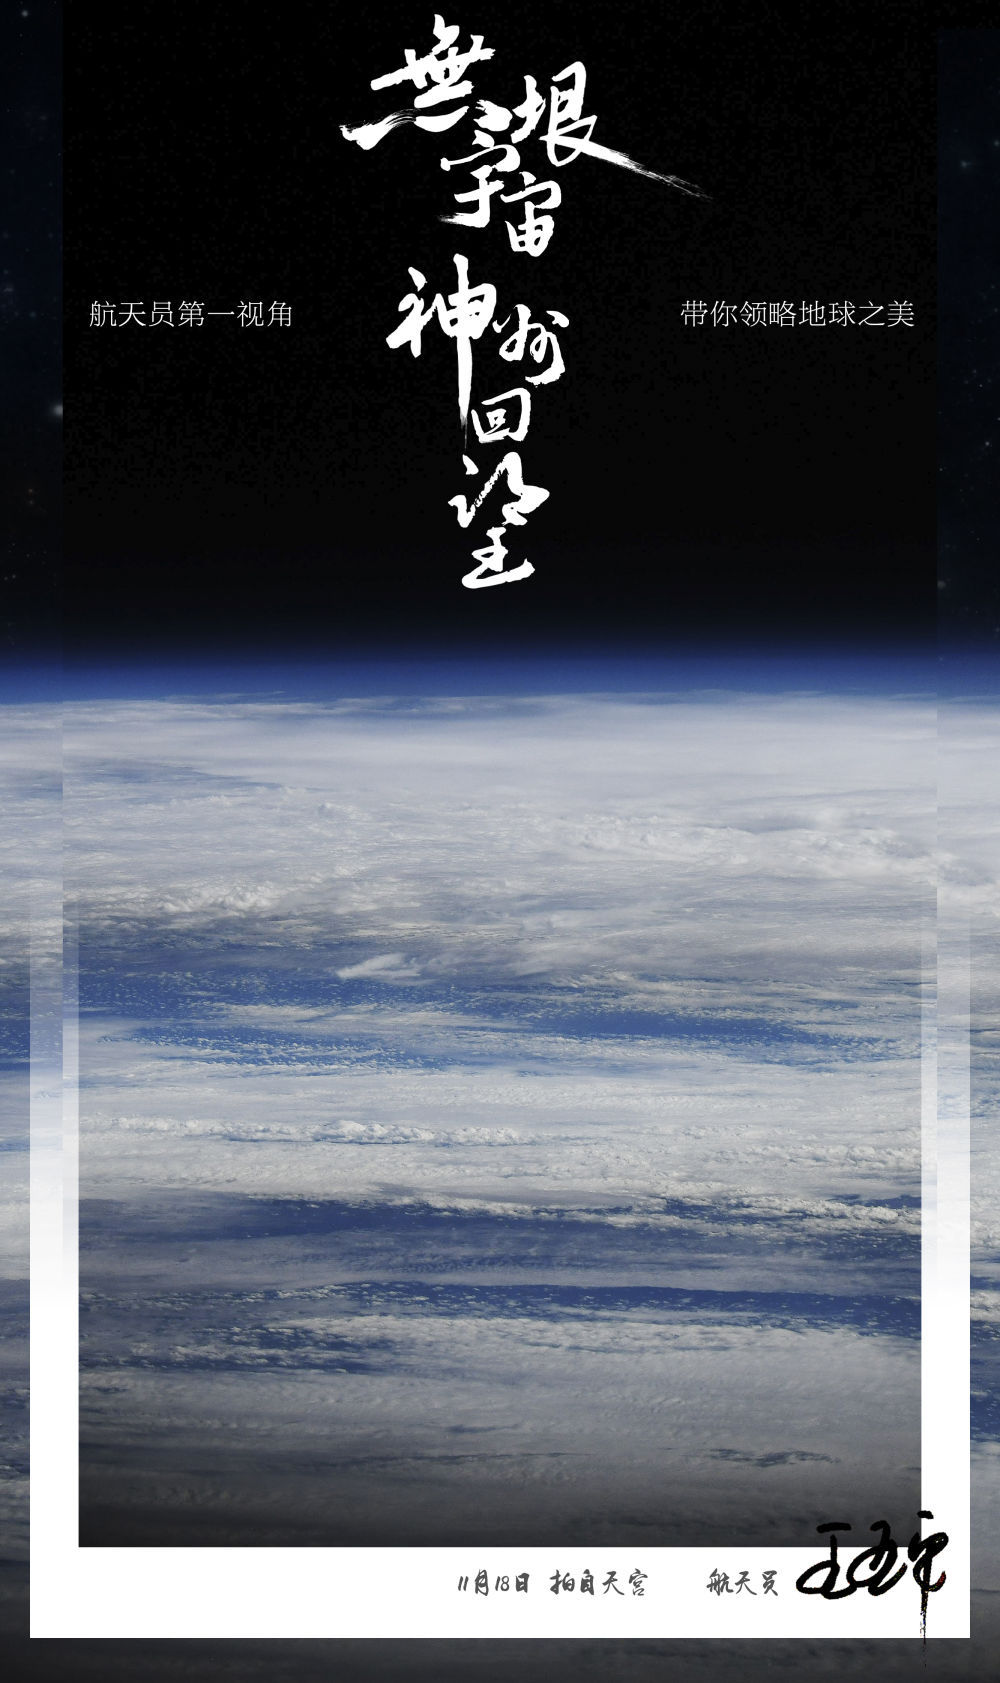 全球拍天宫丨空间站视角！王亚平拍摄的地球大片真美